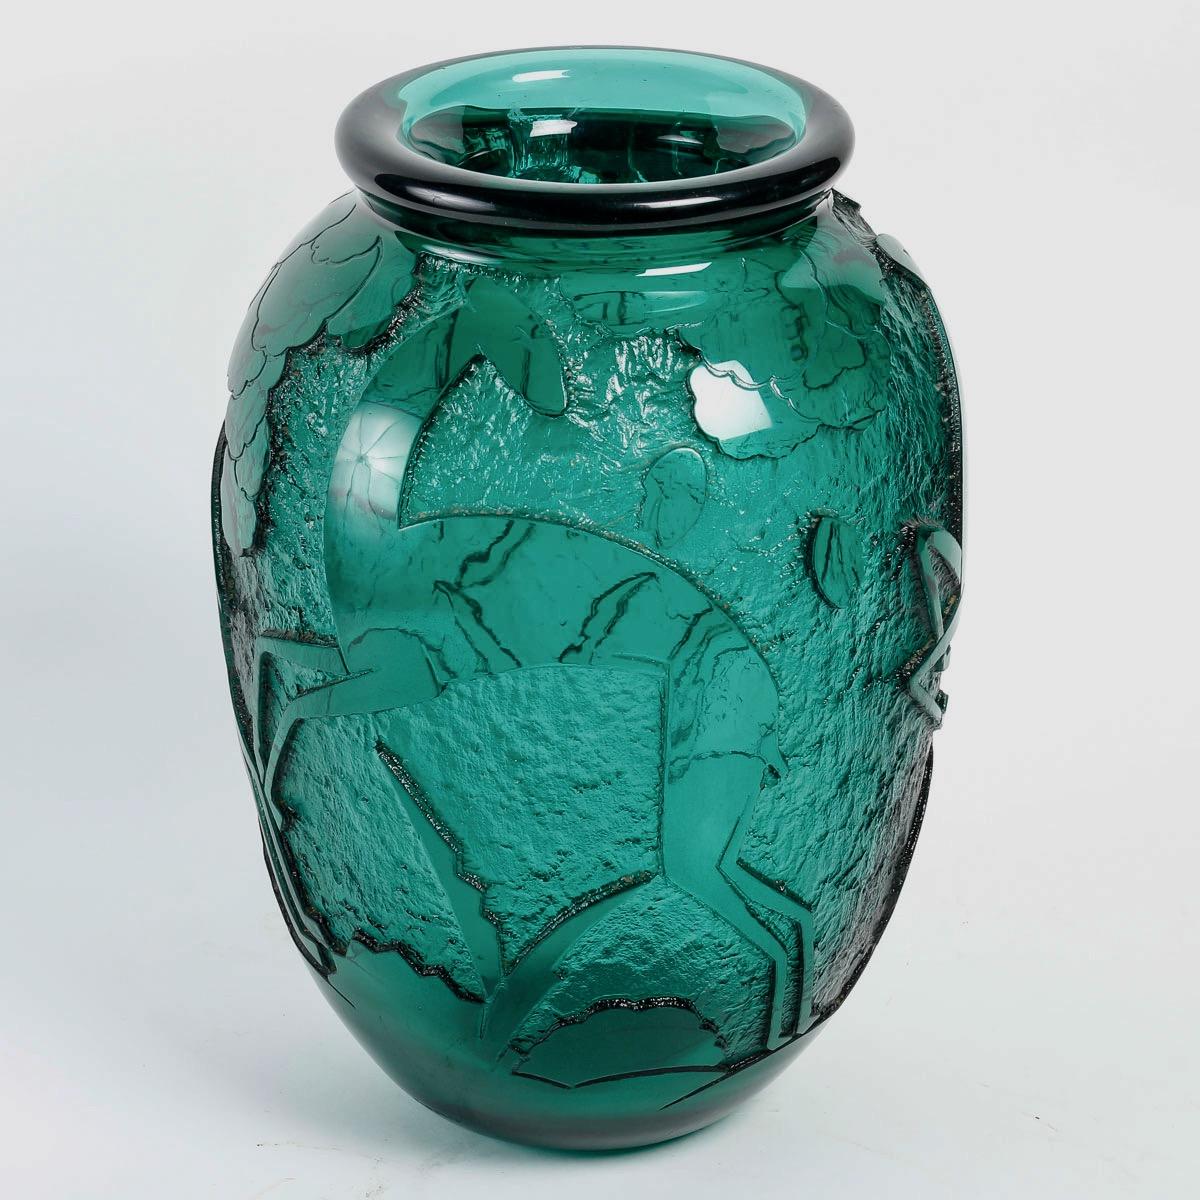 Daum Nançy Art Deco Vase aus säuregeätztem tiefgrünem Glas, um 1930

Seltene und wichtige Vase 